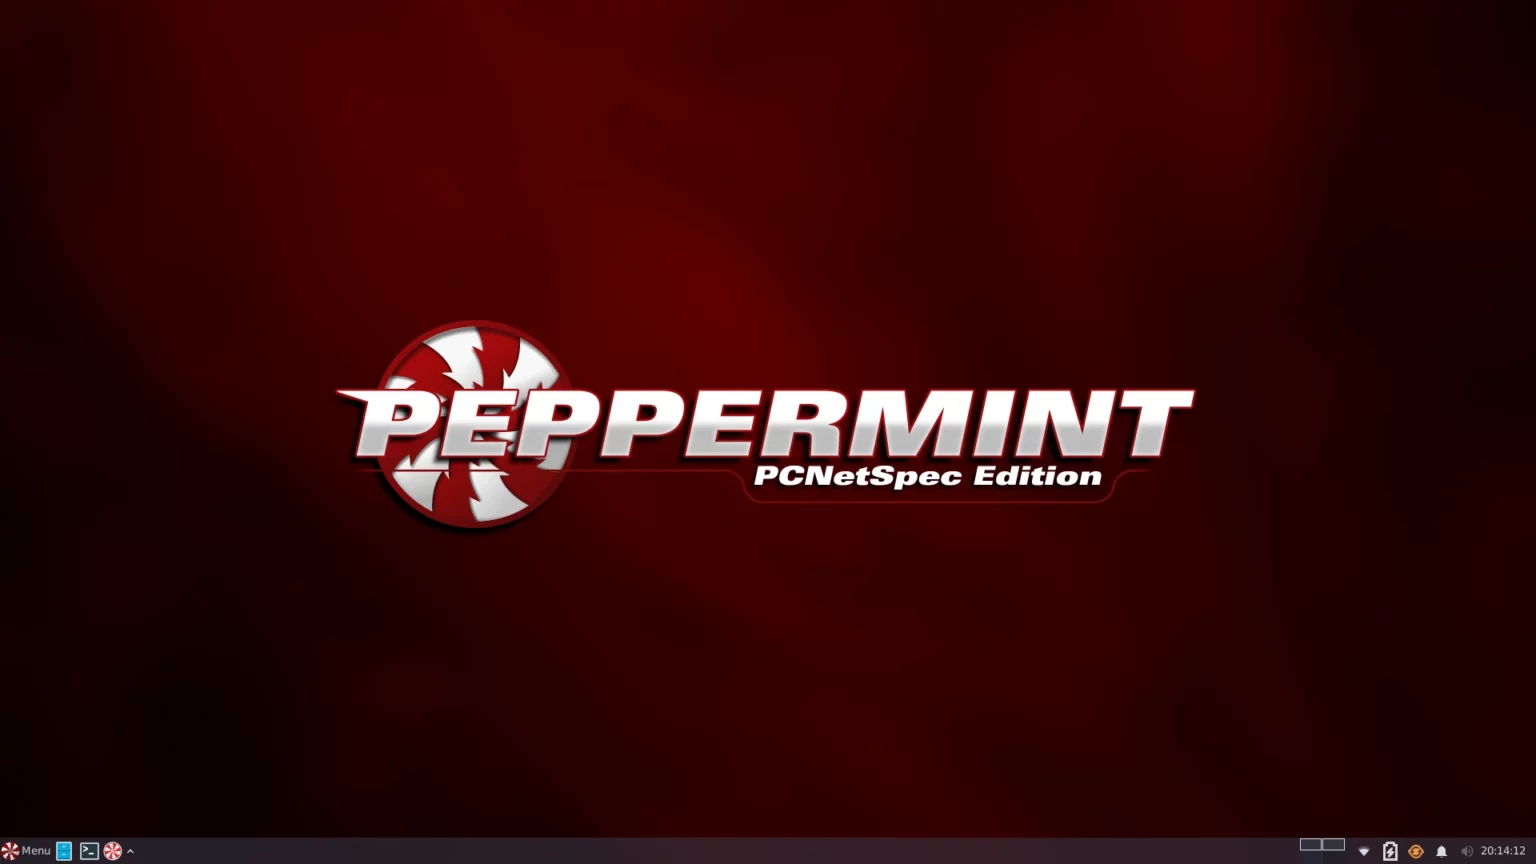 Peppermint OS 11 lançado após 3 anos em desenvolvimento, agora baseado em Debian e Xfce